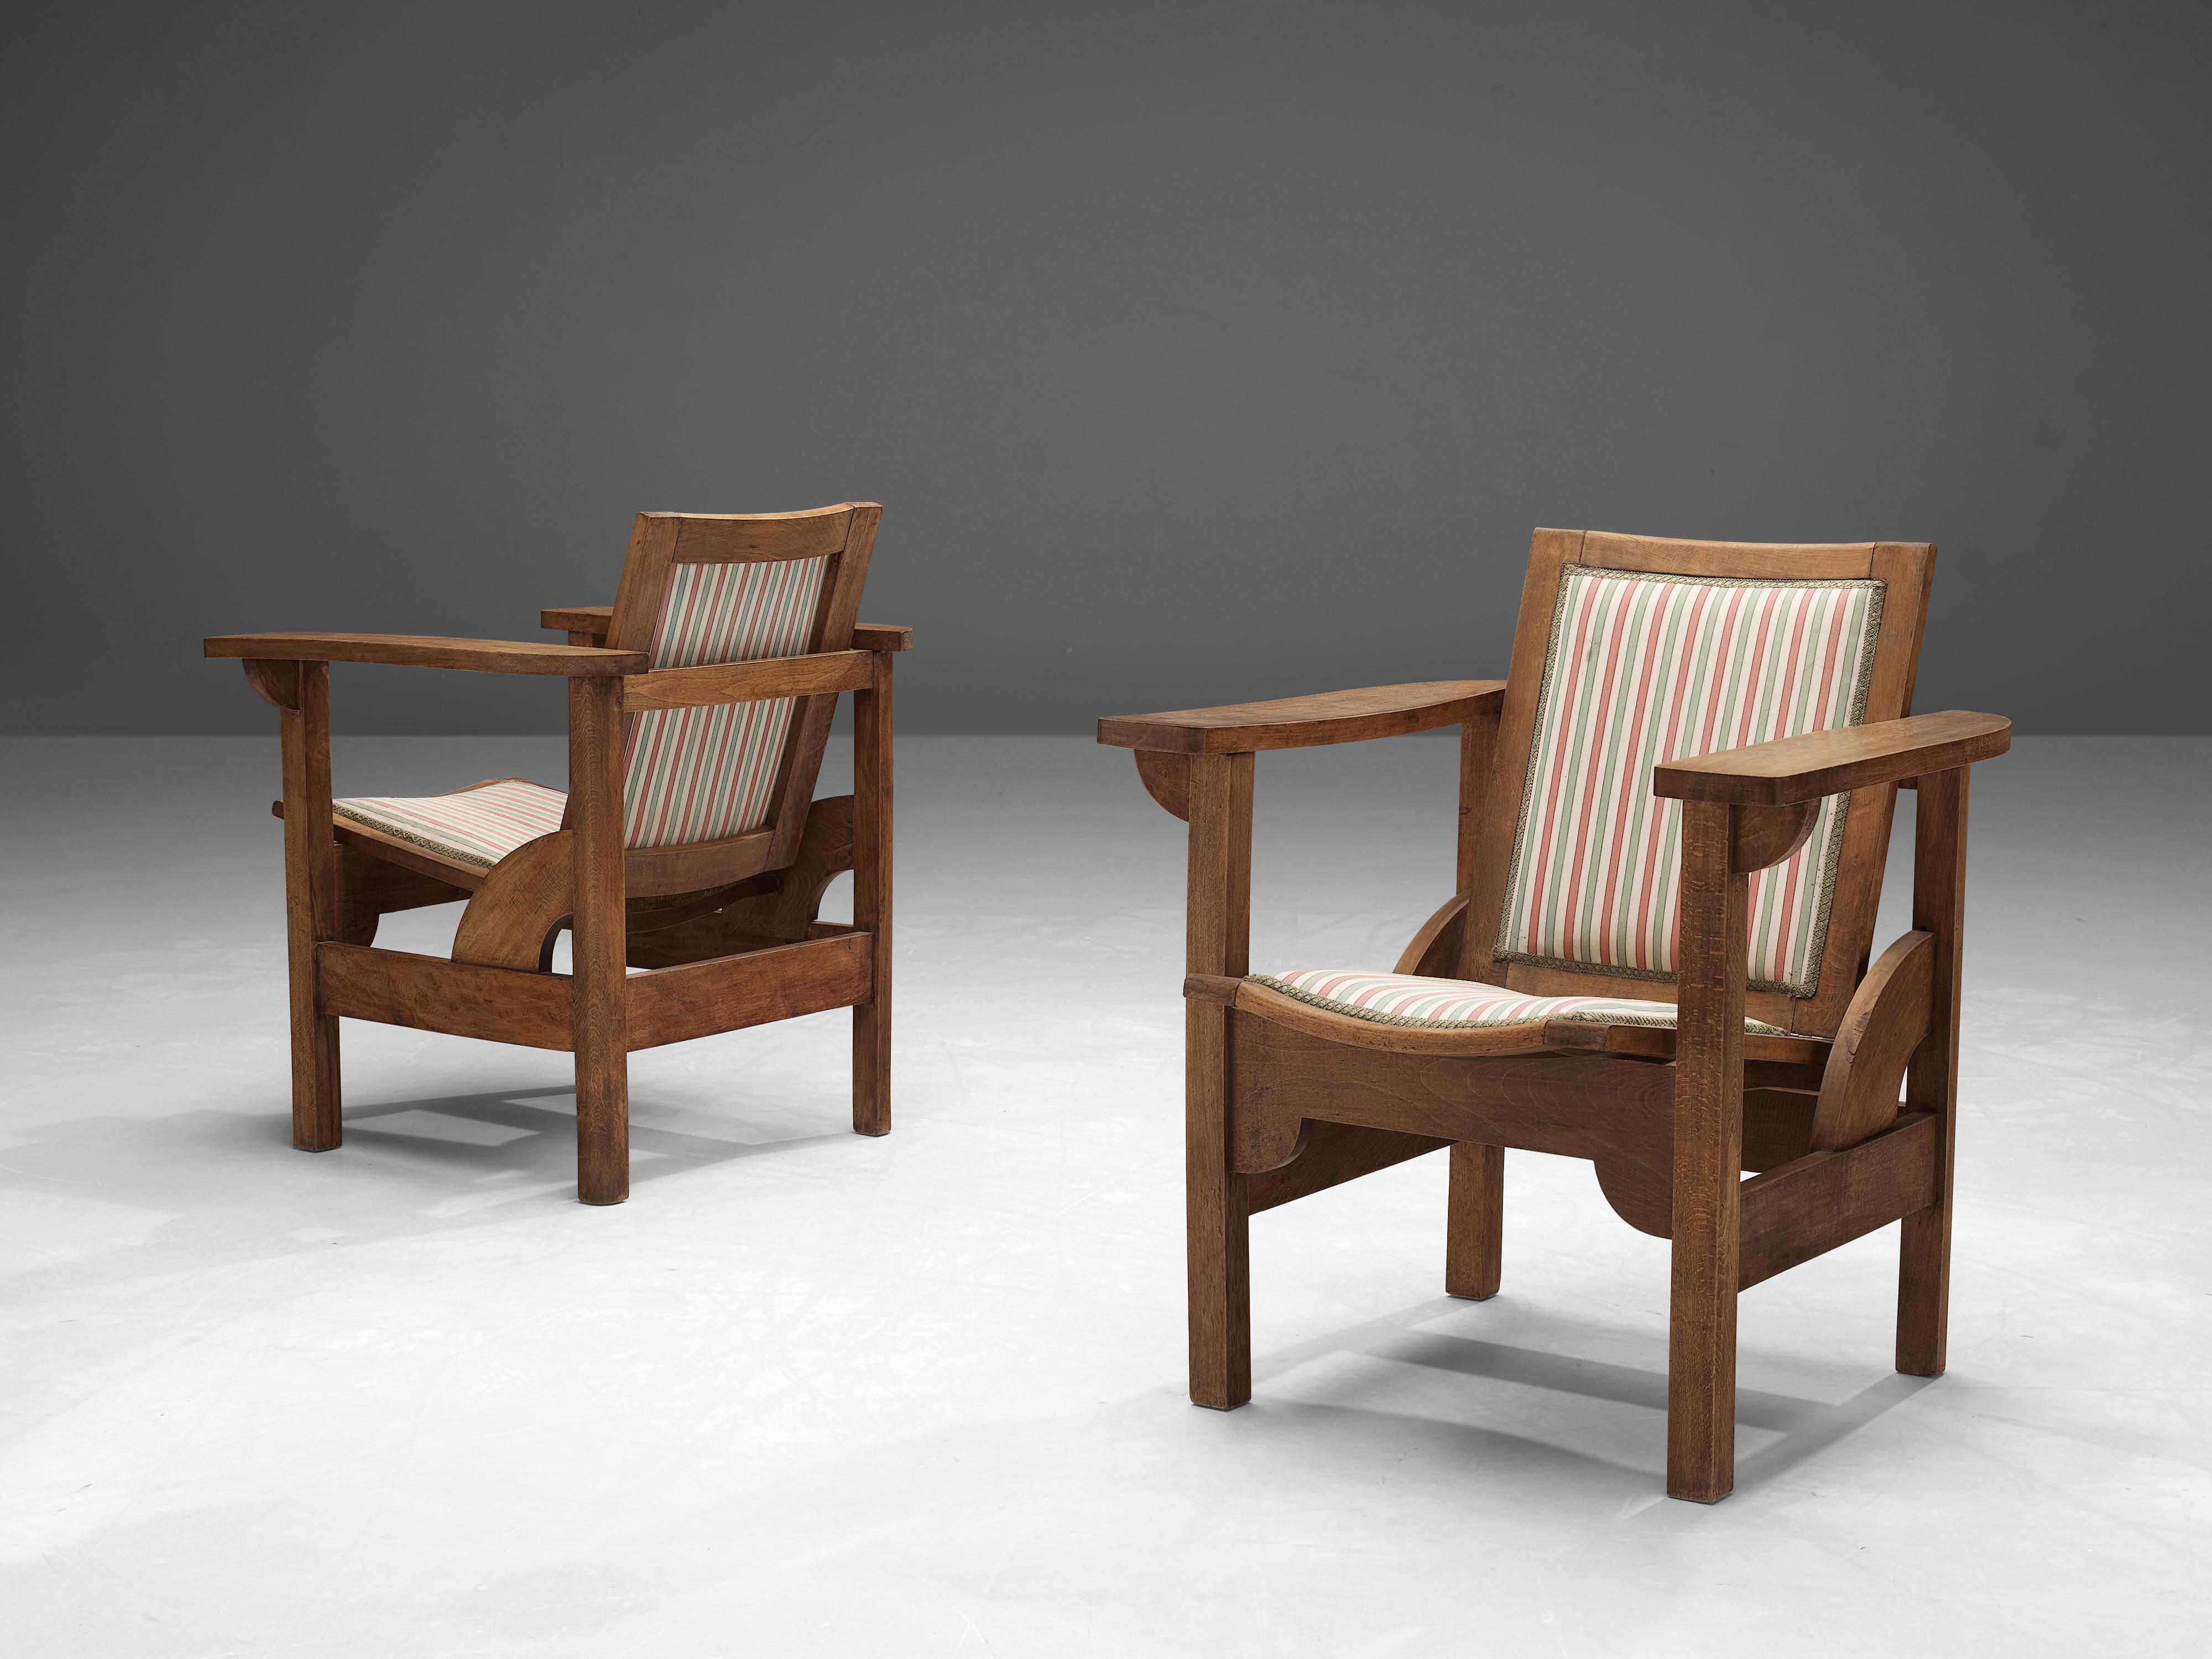 Pierre Dariel, paire de fauteuils Beeche, hêtre, tissu, France, années 1930

Paire de fauteuils conçus par Pierre Dariel dans les années 1930. La structure est entièrement composée de hêtre, tandis que l'assise et le dossier sont rembourrés. Ces